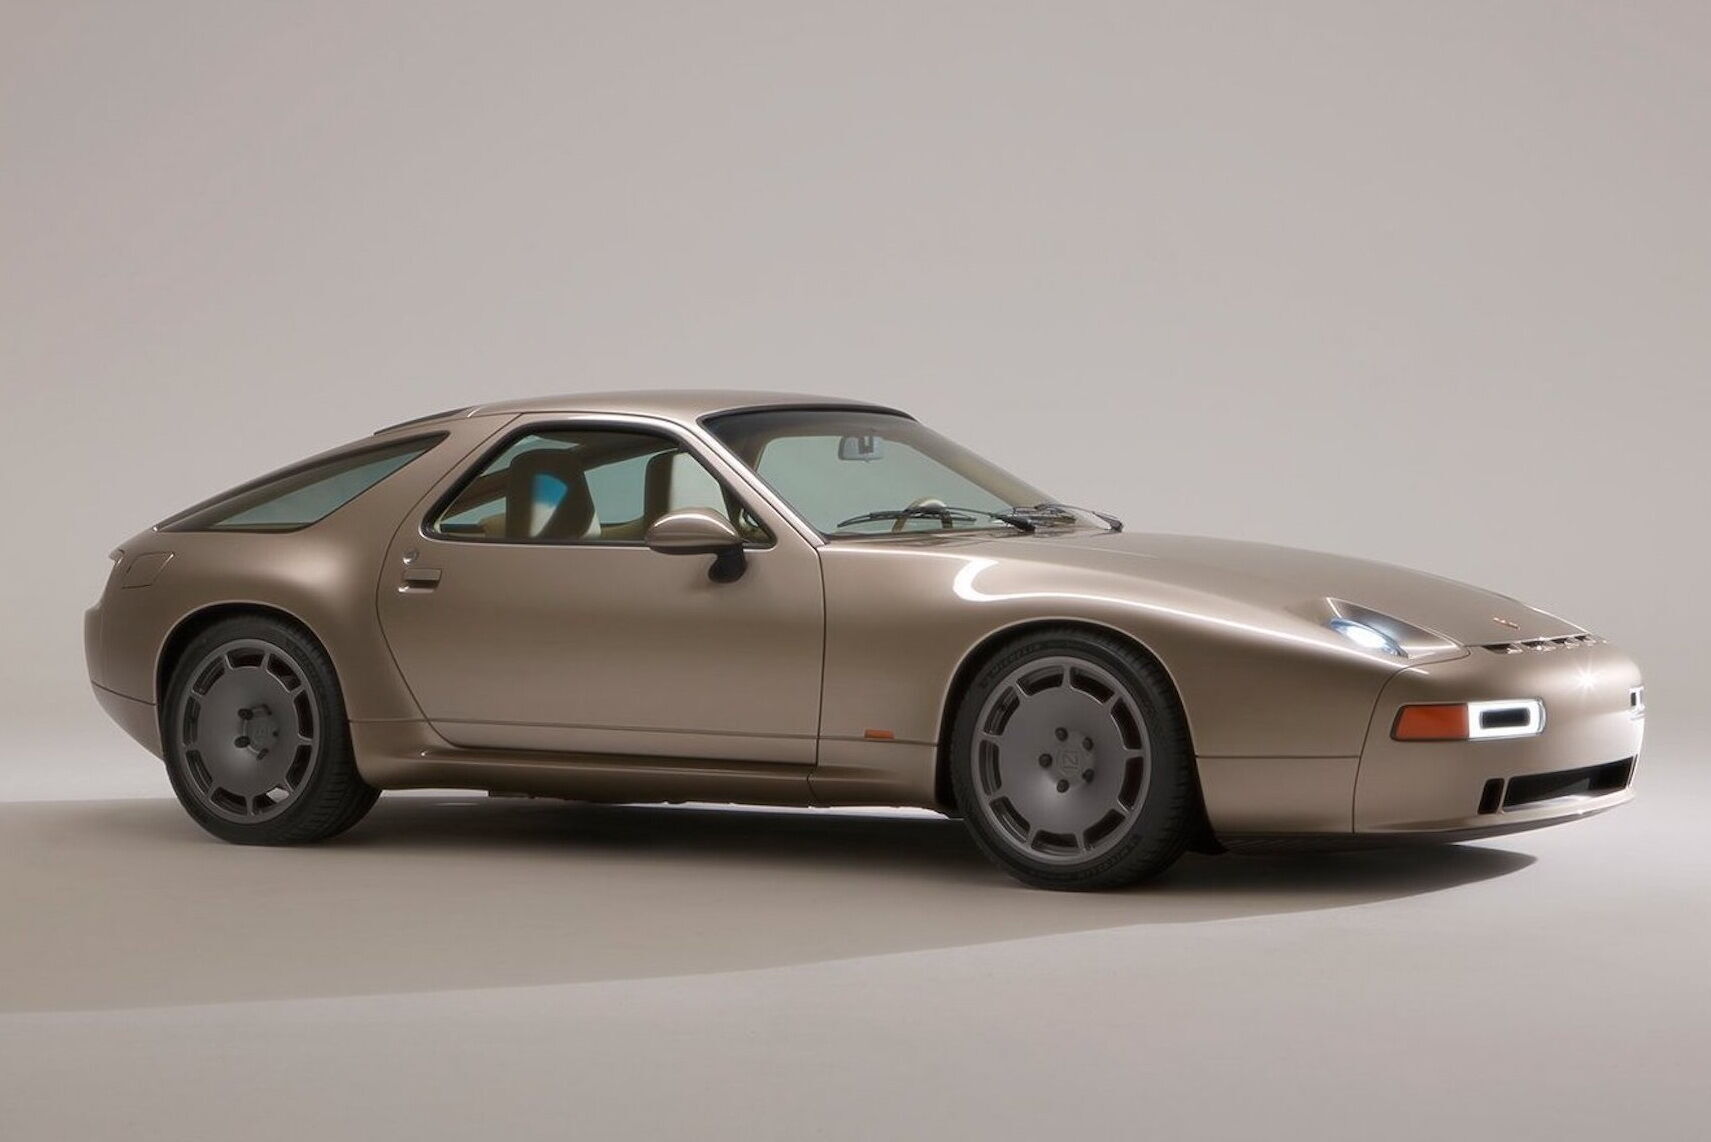 Автомобиль имеет узнаваемый дизайн и характерные стилистические элементы Porsche 1977 года